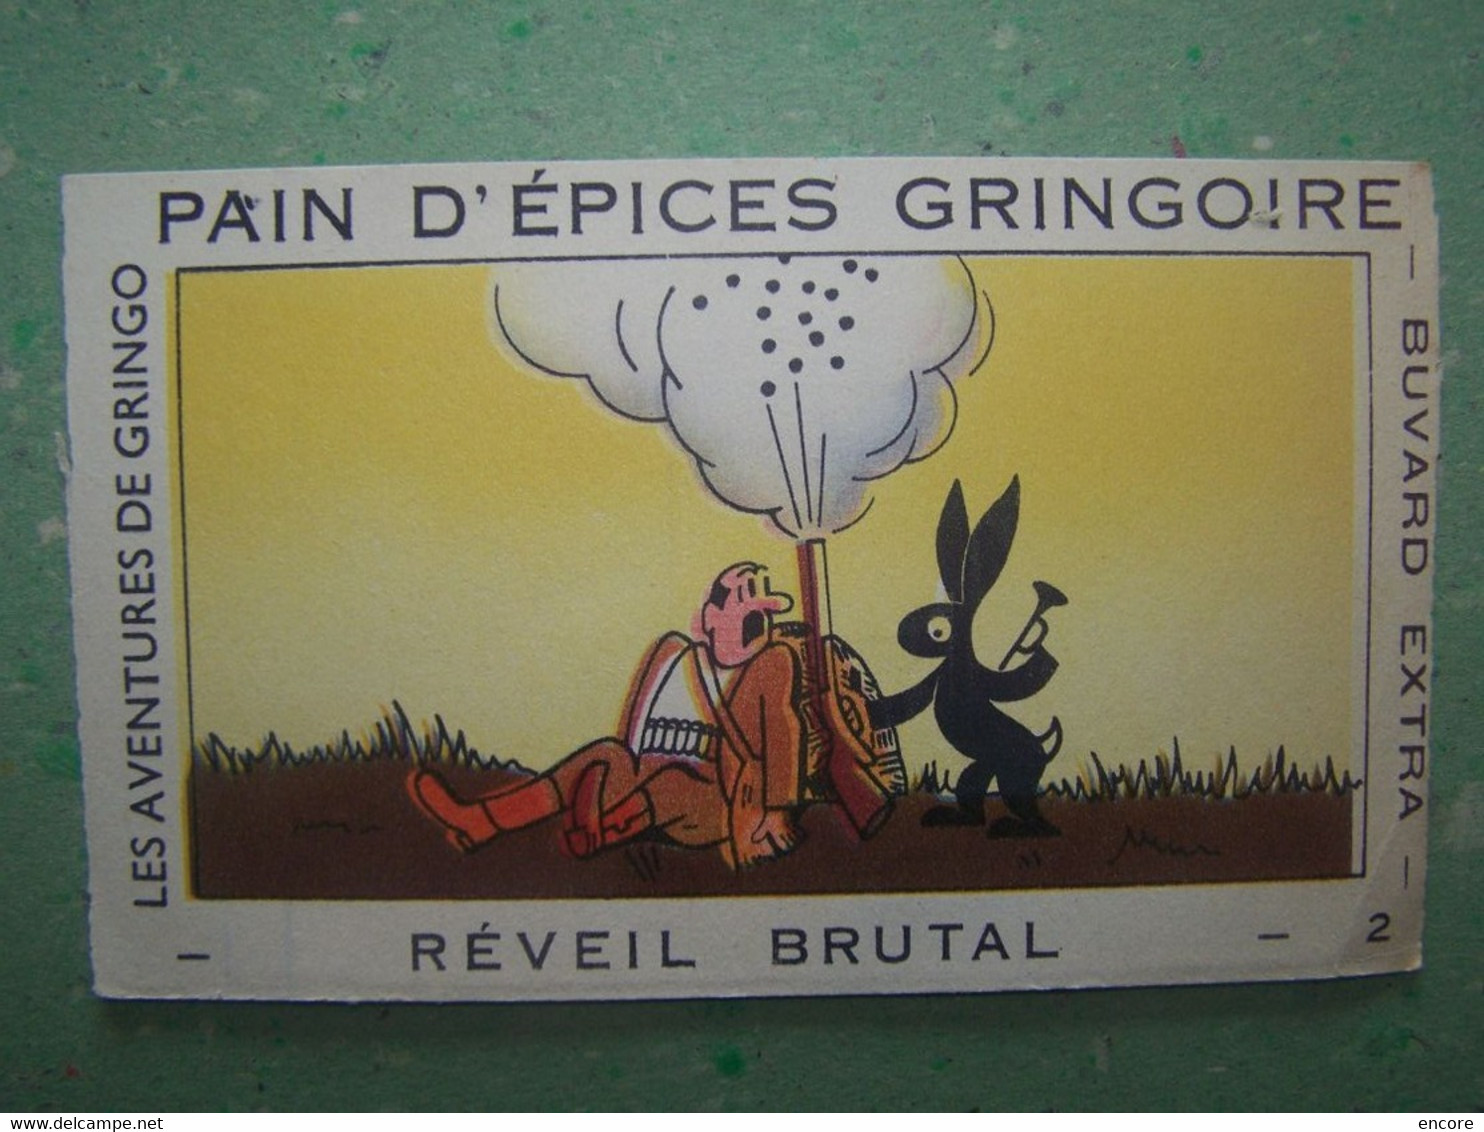 BUVARD. PUBLICITE "PAIN D'EPICES GRINGOIRE". LA CHASSE. REVEIL BRUTAL. 100_7026TRC"a" - Gingerbread